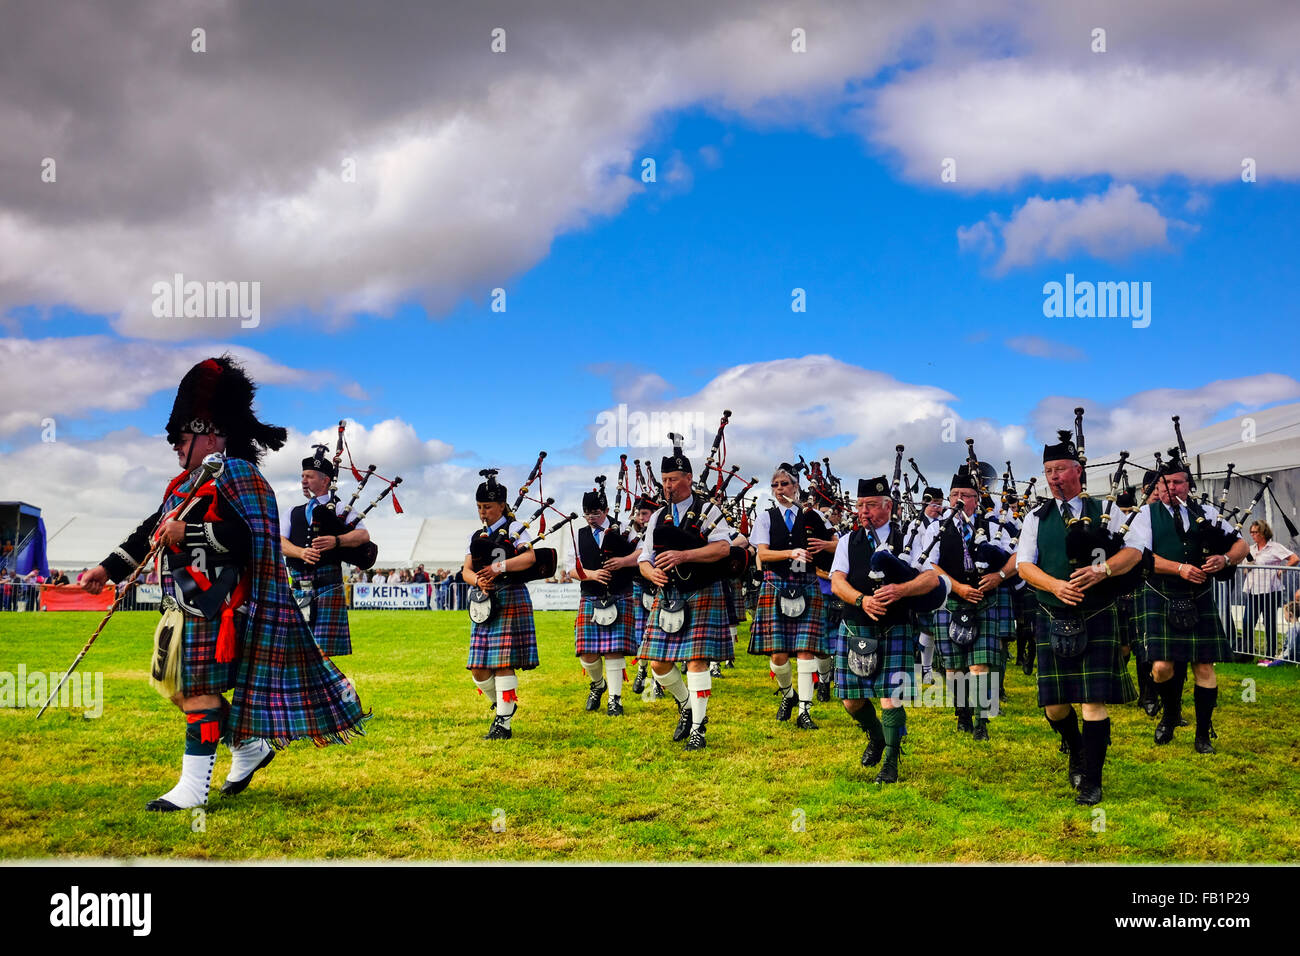 Schottischer Dudelsackspieler Band marschieren während schottische Sommerspiele in Keith, Schottland, Vereinigtes Königreich Tartan Kilt tragen. Stockfoto